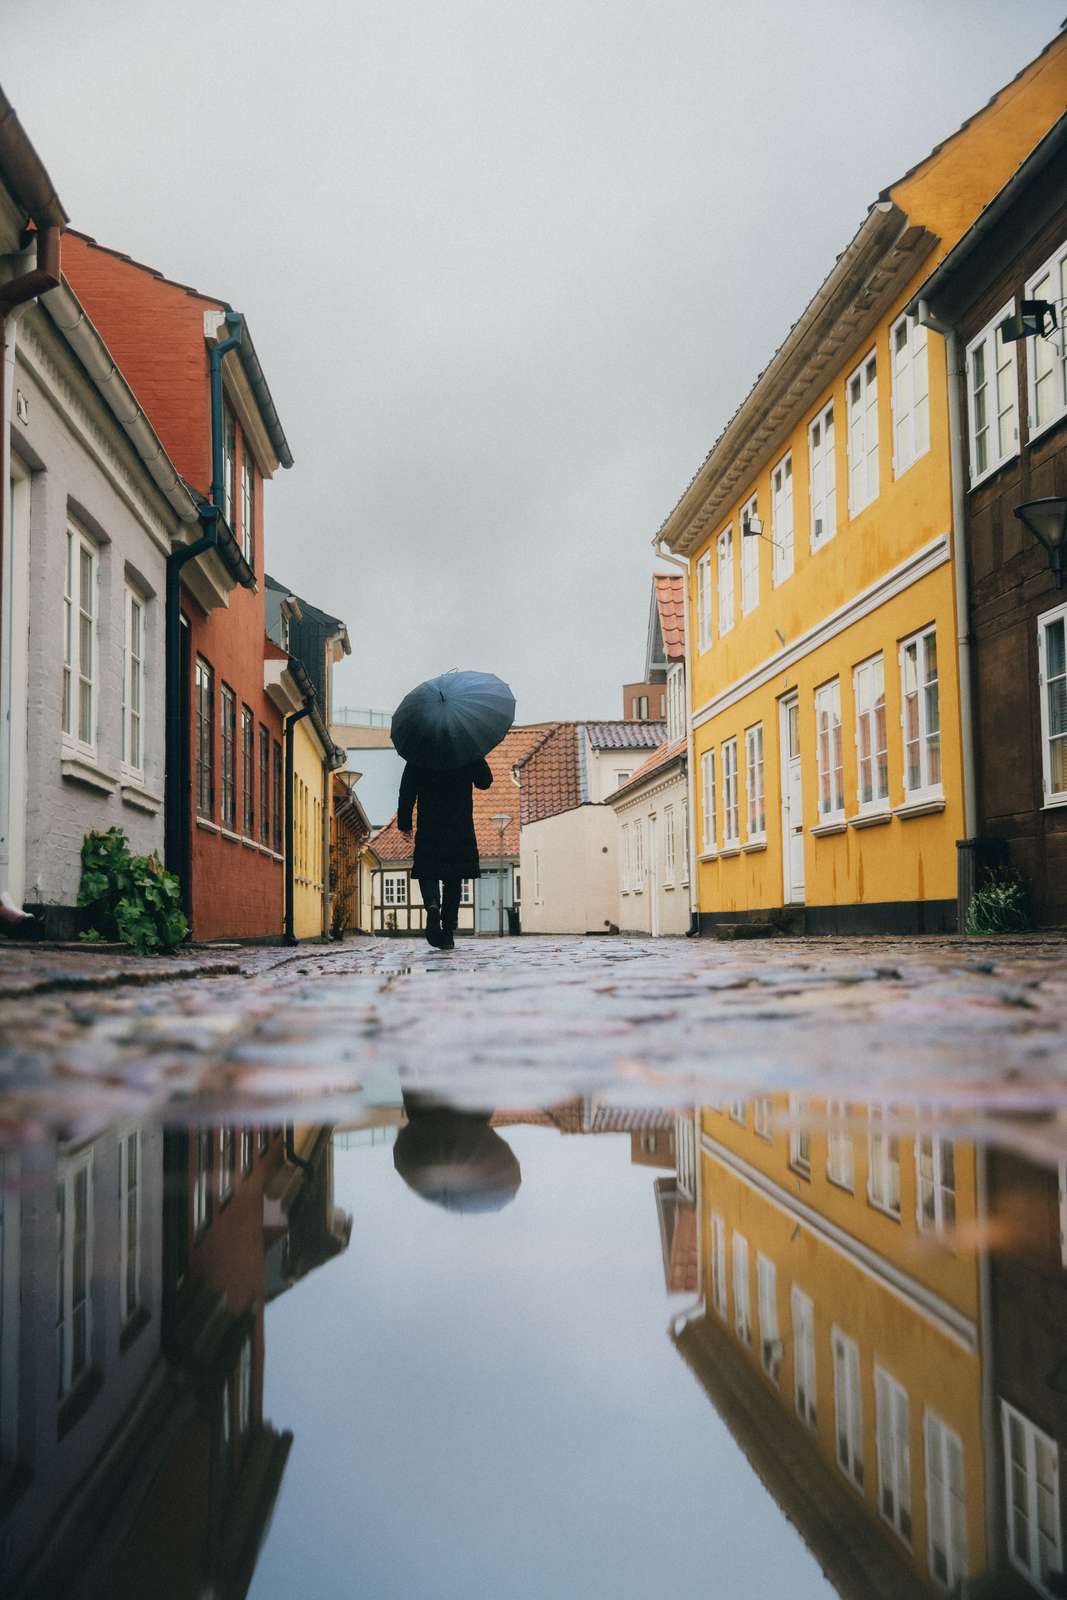 Det gamle, historiske kvarter i regnvejr, Odense (2)